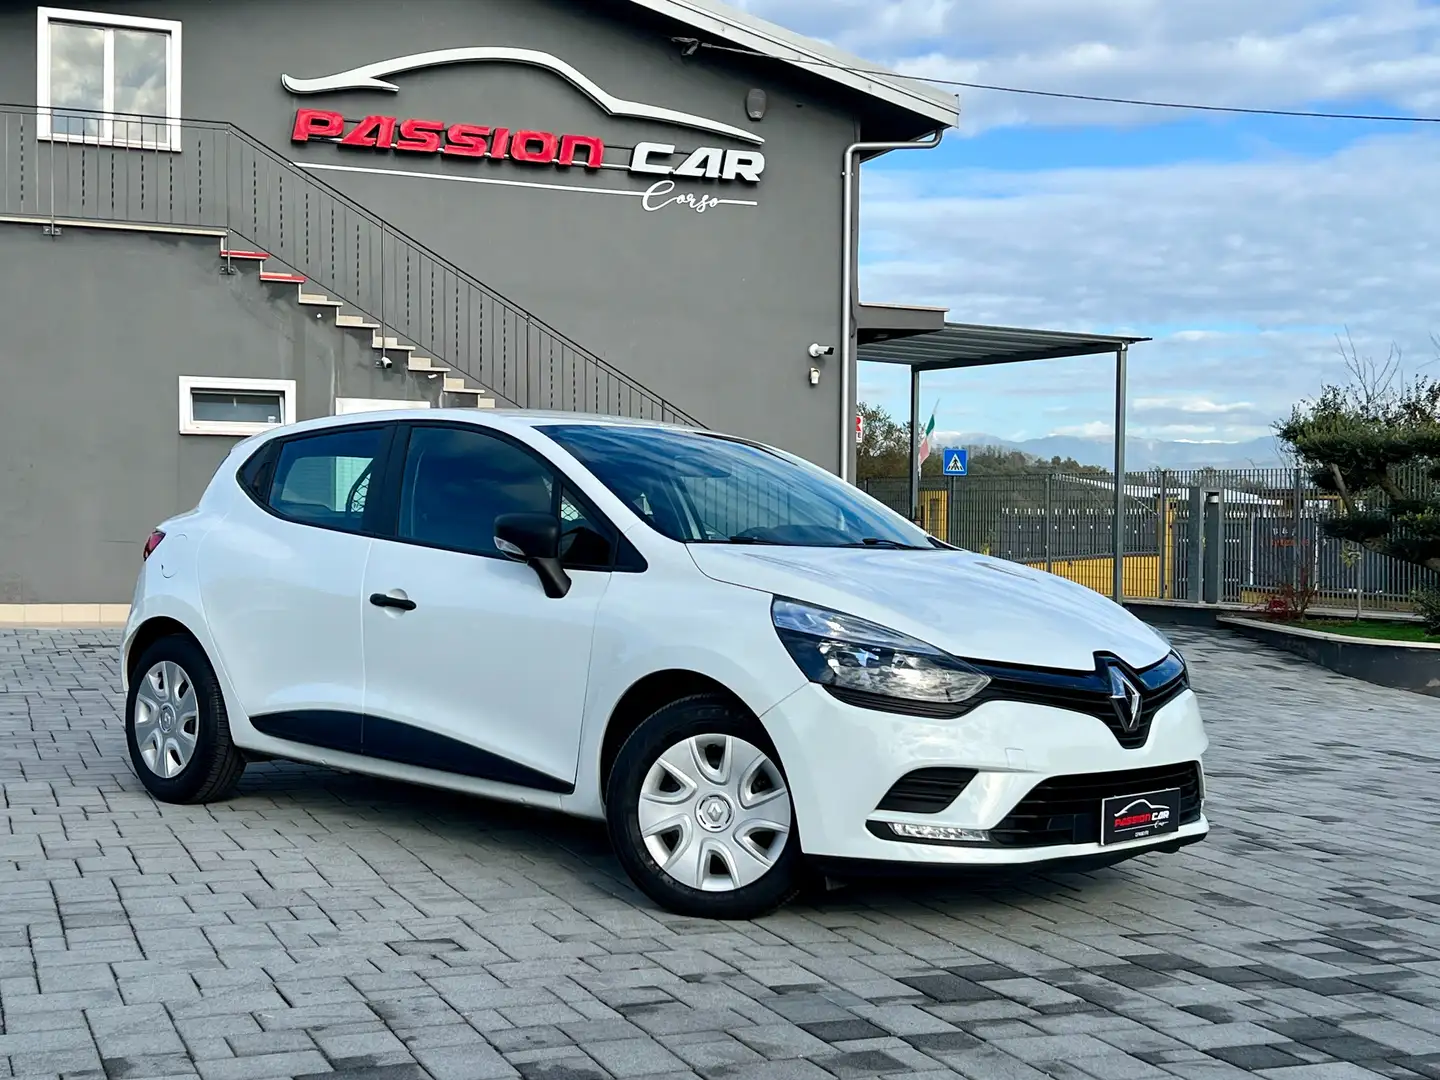 Renault Clio usata a Ceprano - Fr per € 7.990,-